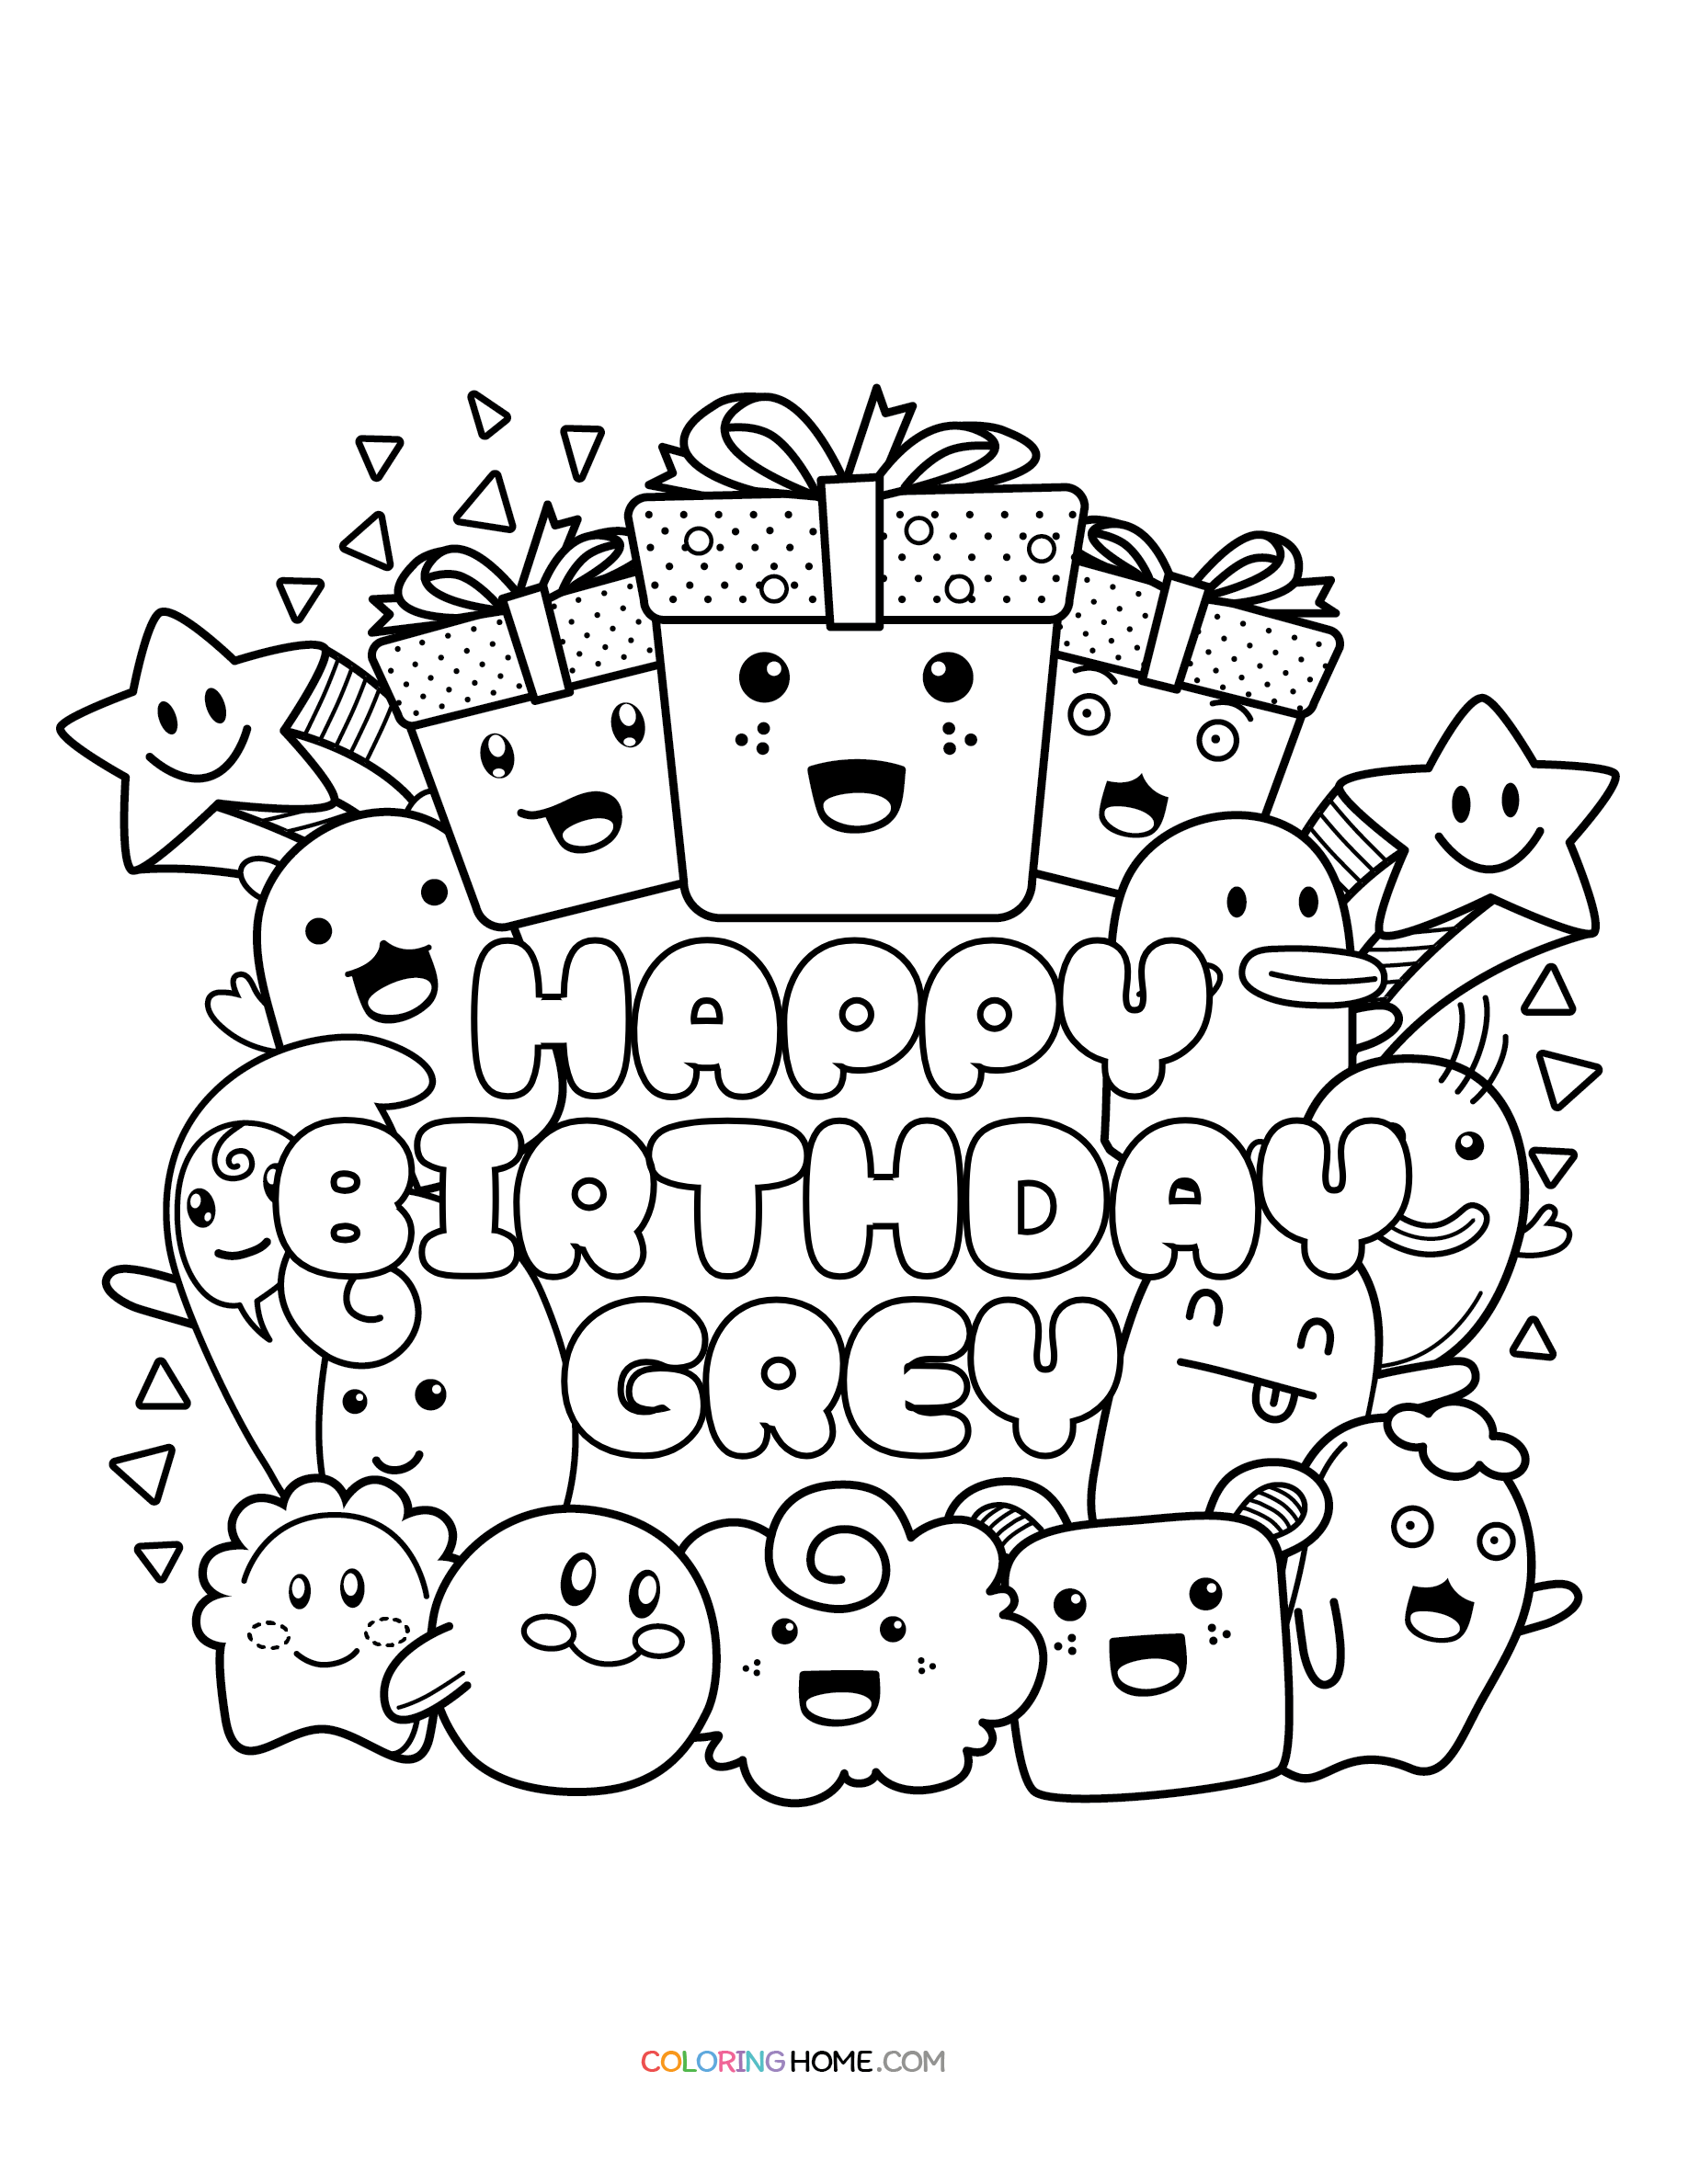 Happy Birthday Grey coloring page